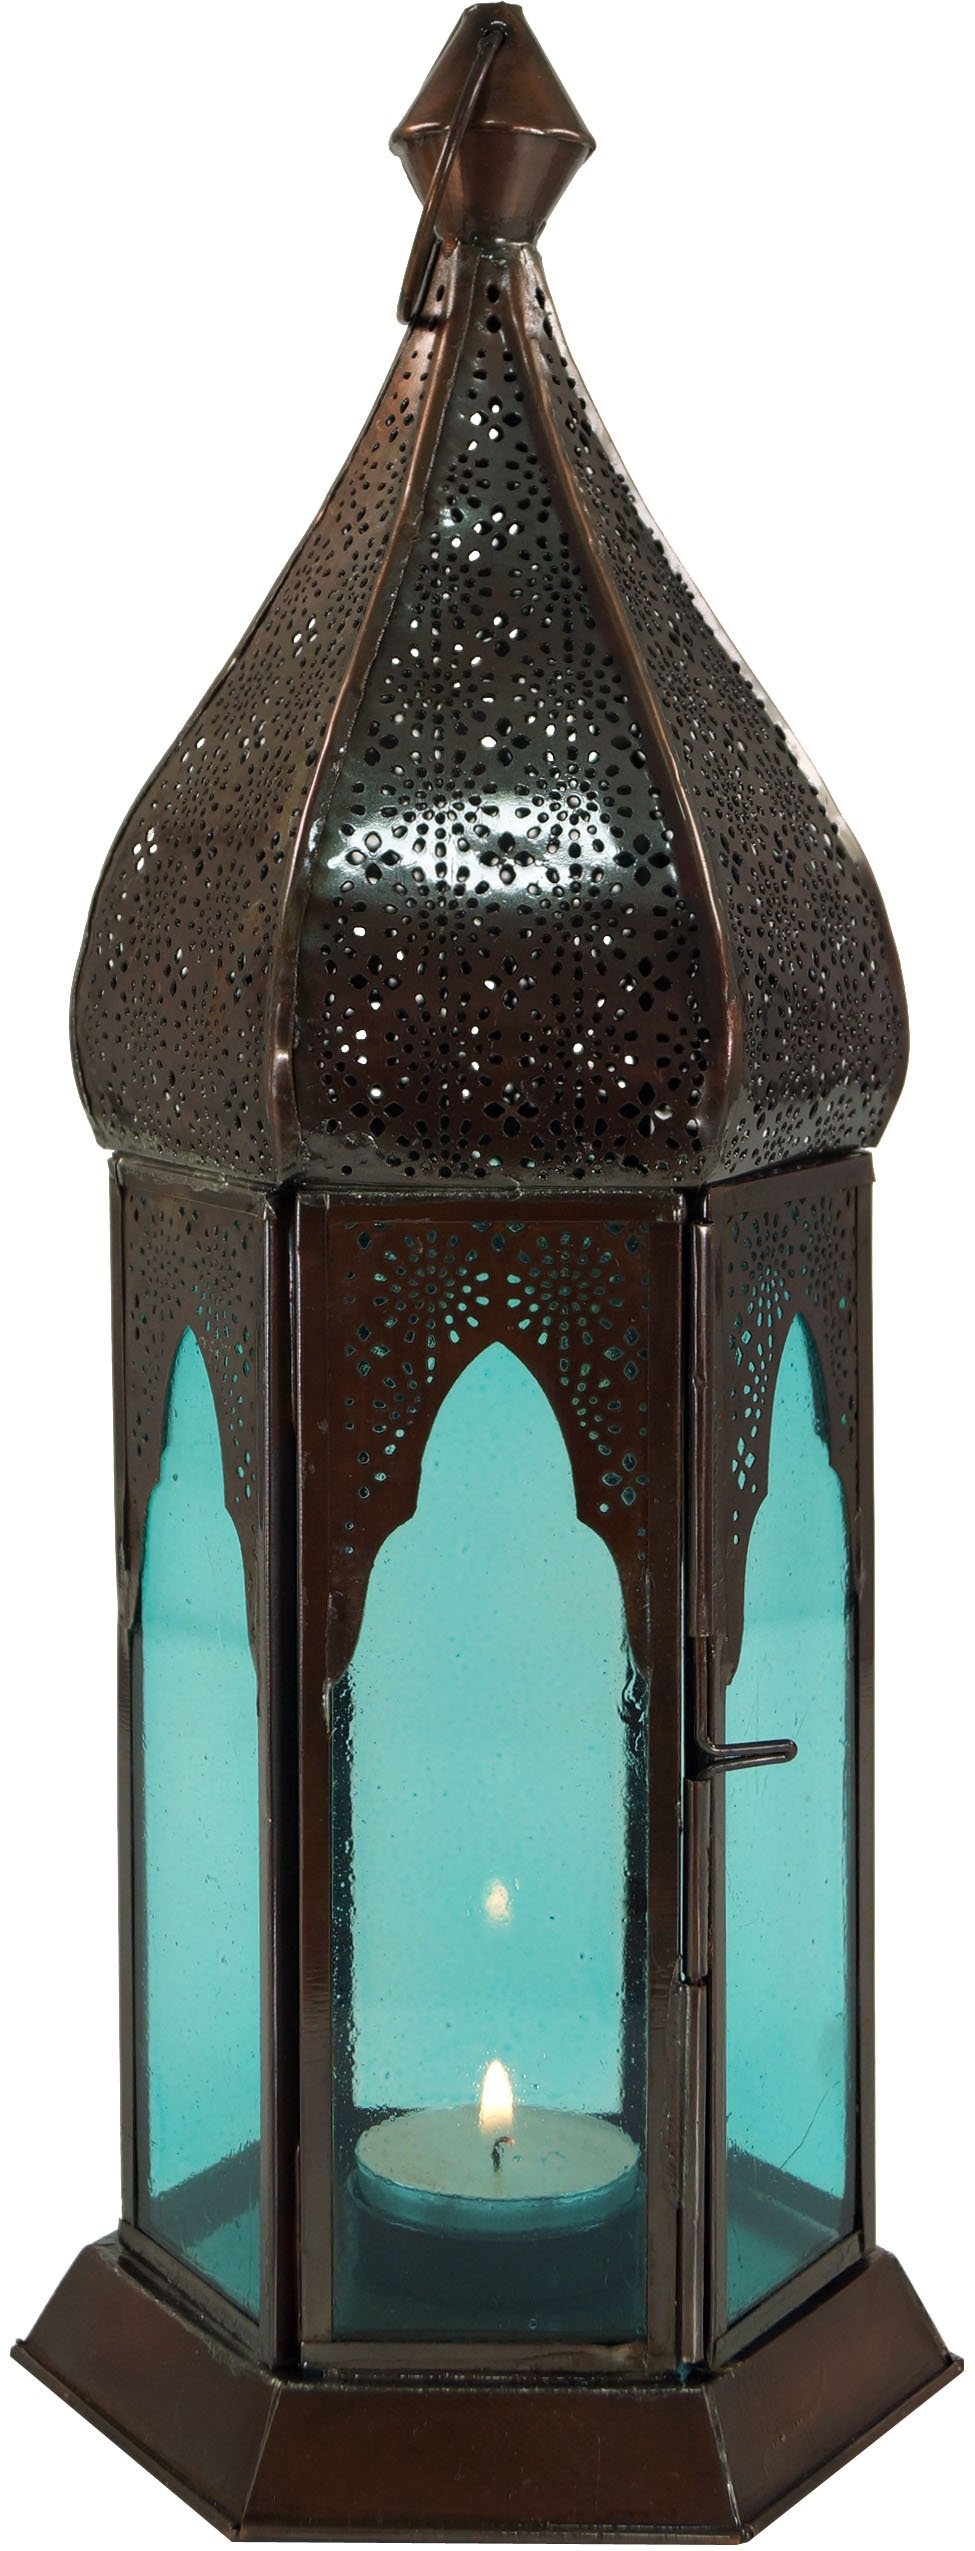 GURU SHOP Orientalische Metall/Glas Laterne in Marrokanischem Design, Windlicht, Türkis, Farbe: Türkis, 33x12x12 cm, Orientalische Laternen